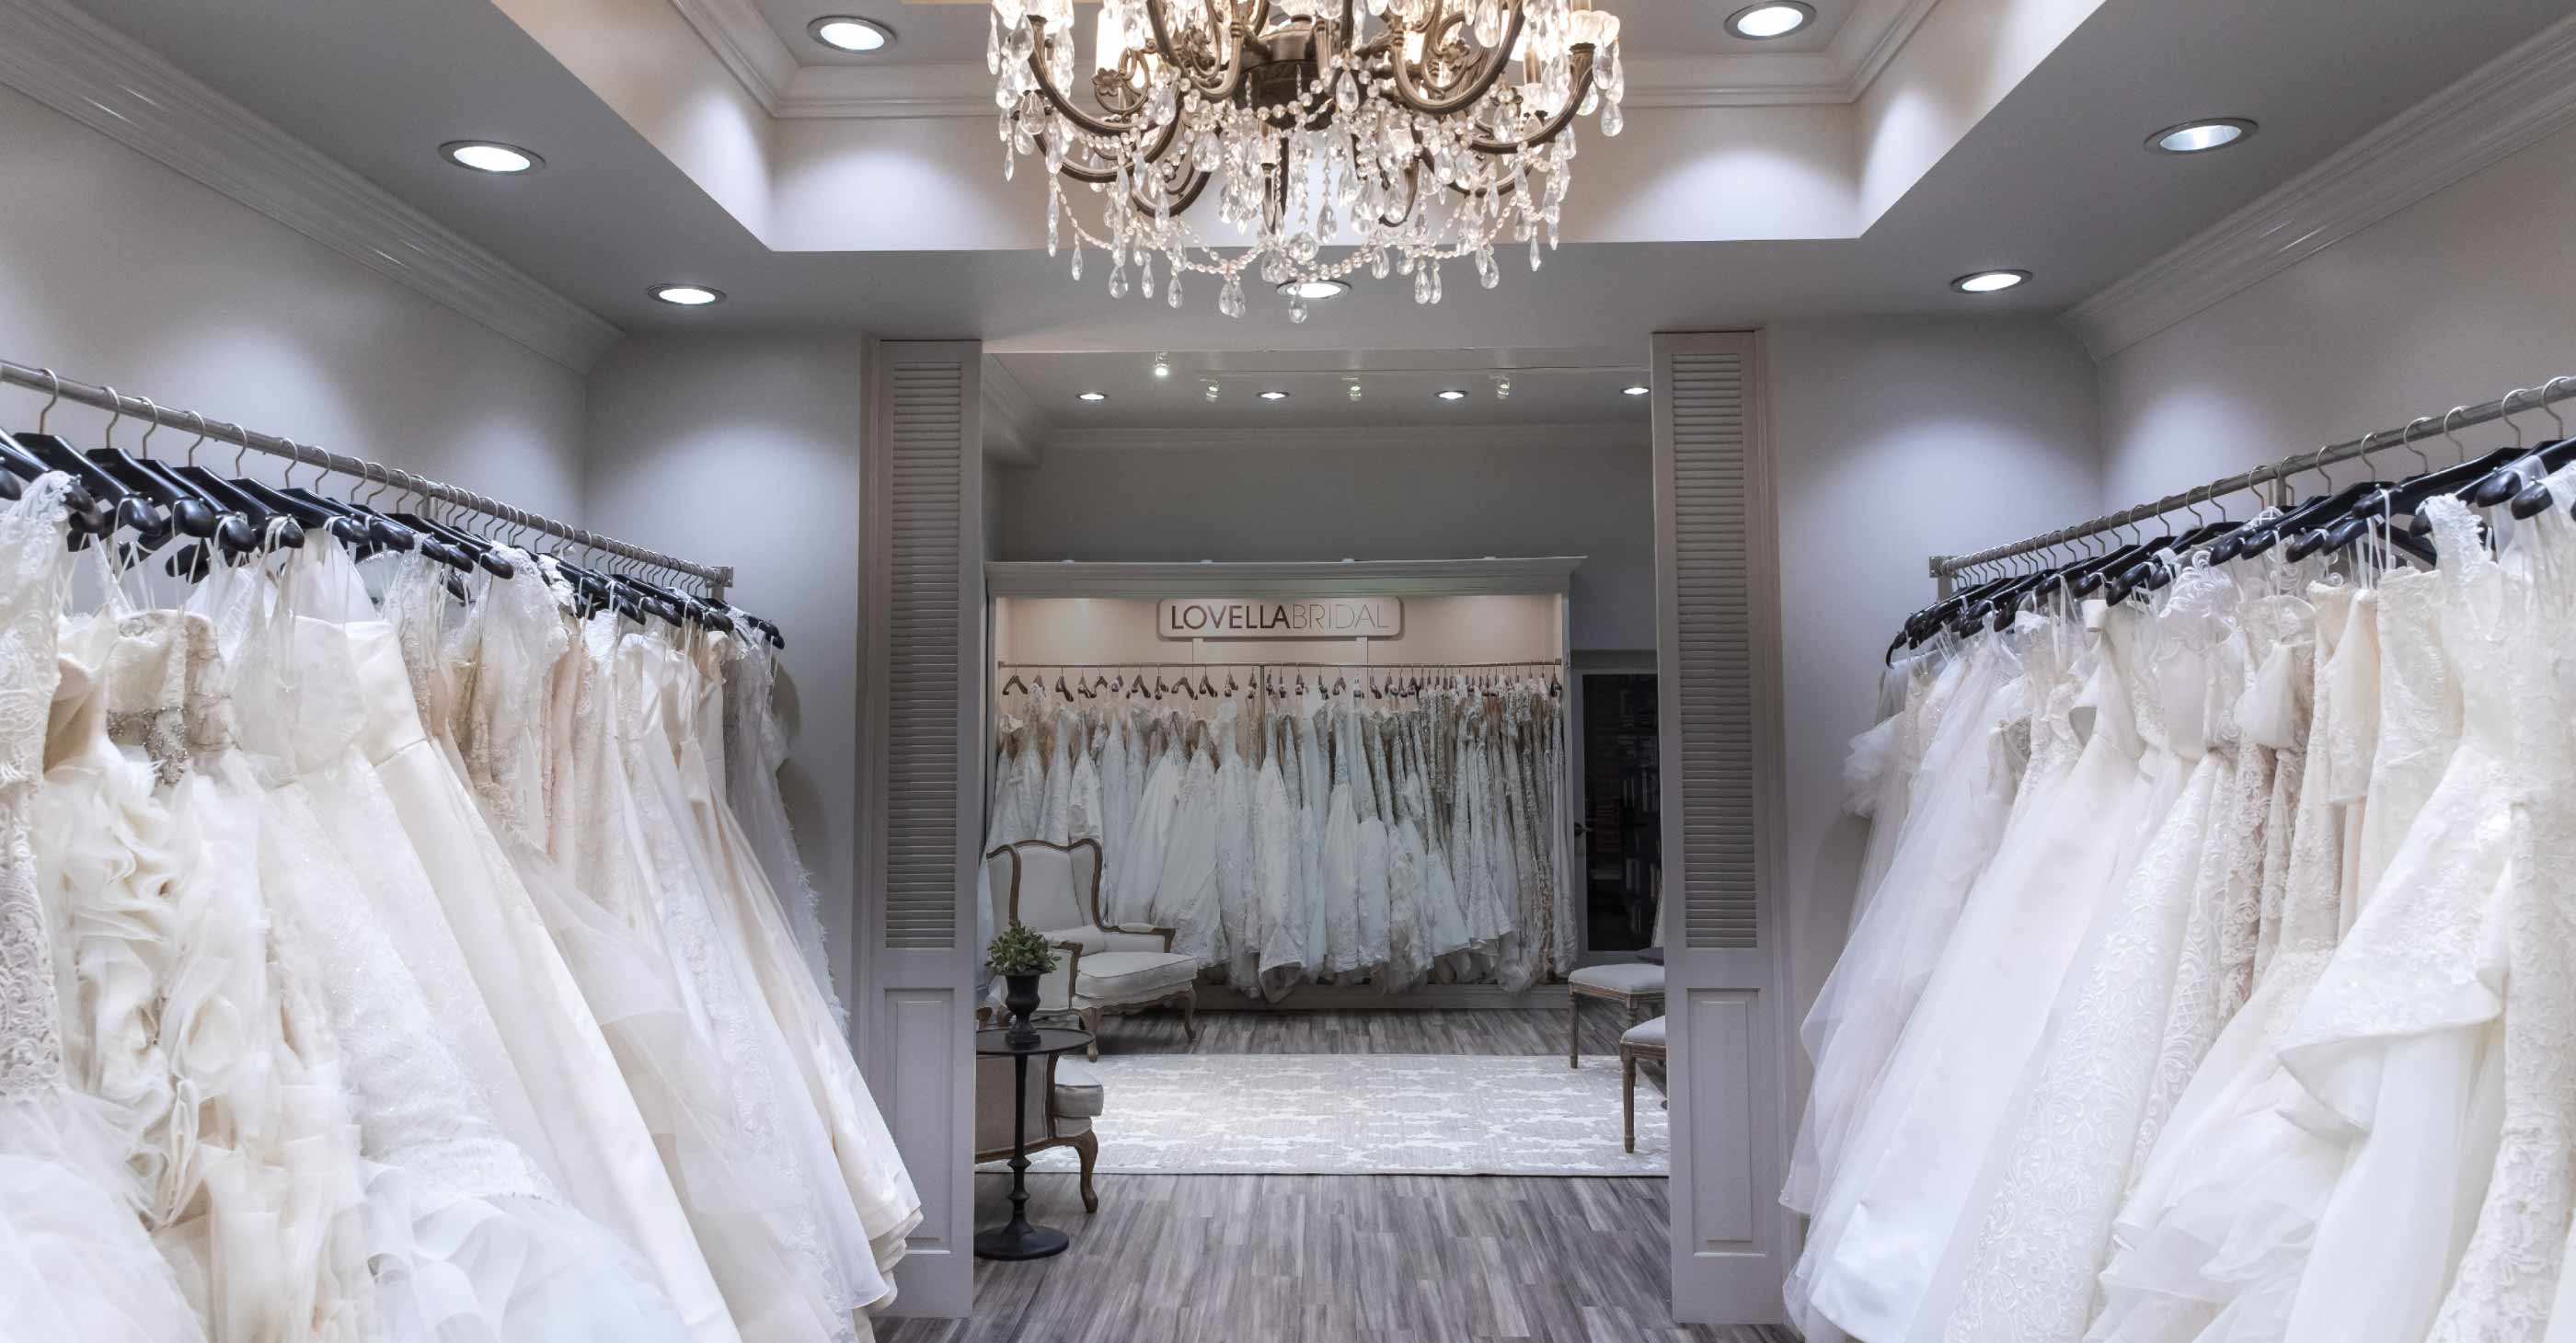 bridal shops, Off 70%, www.spotsclick.com